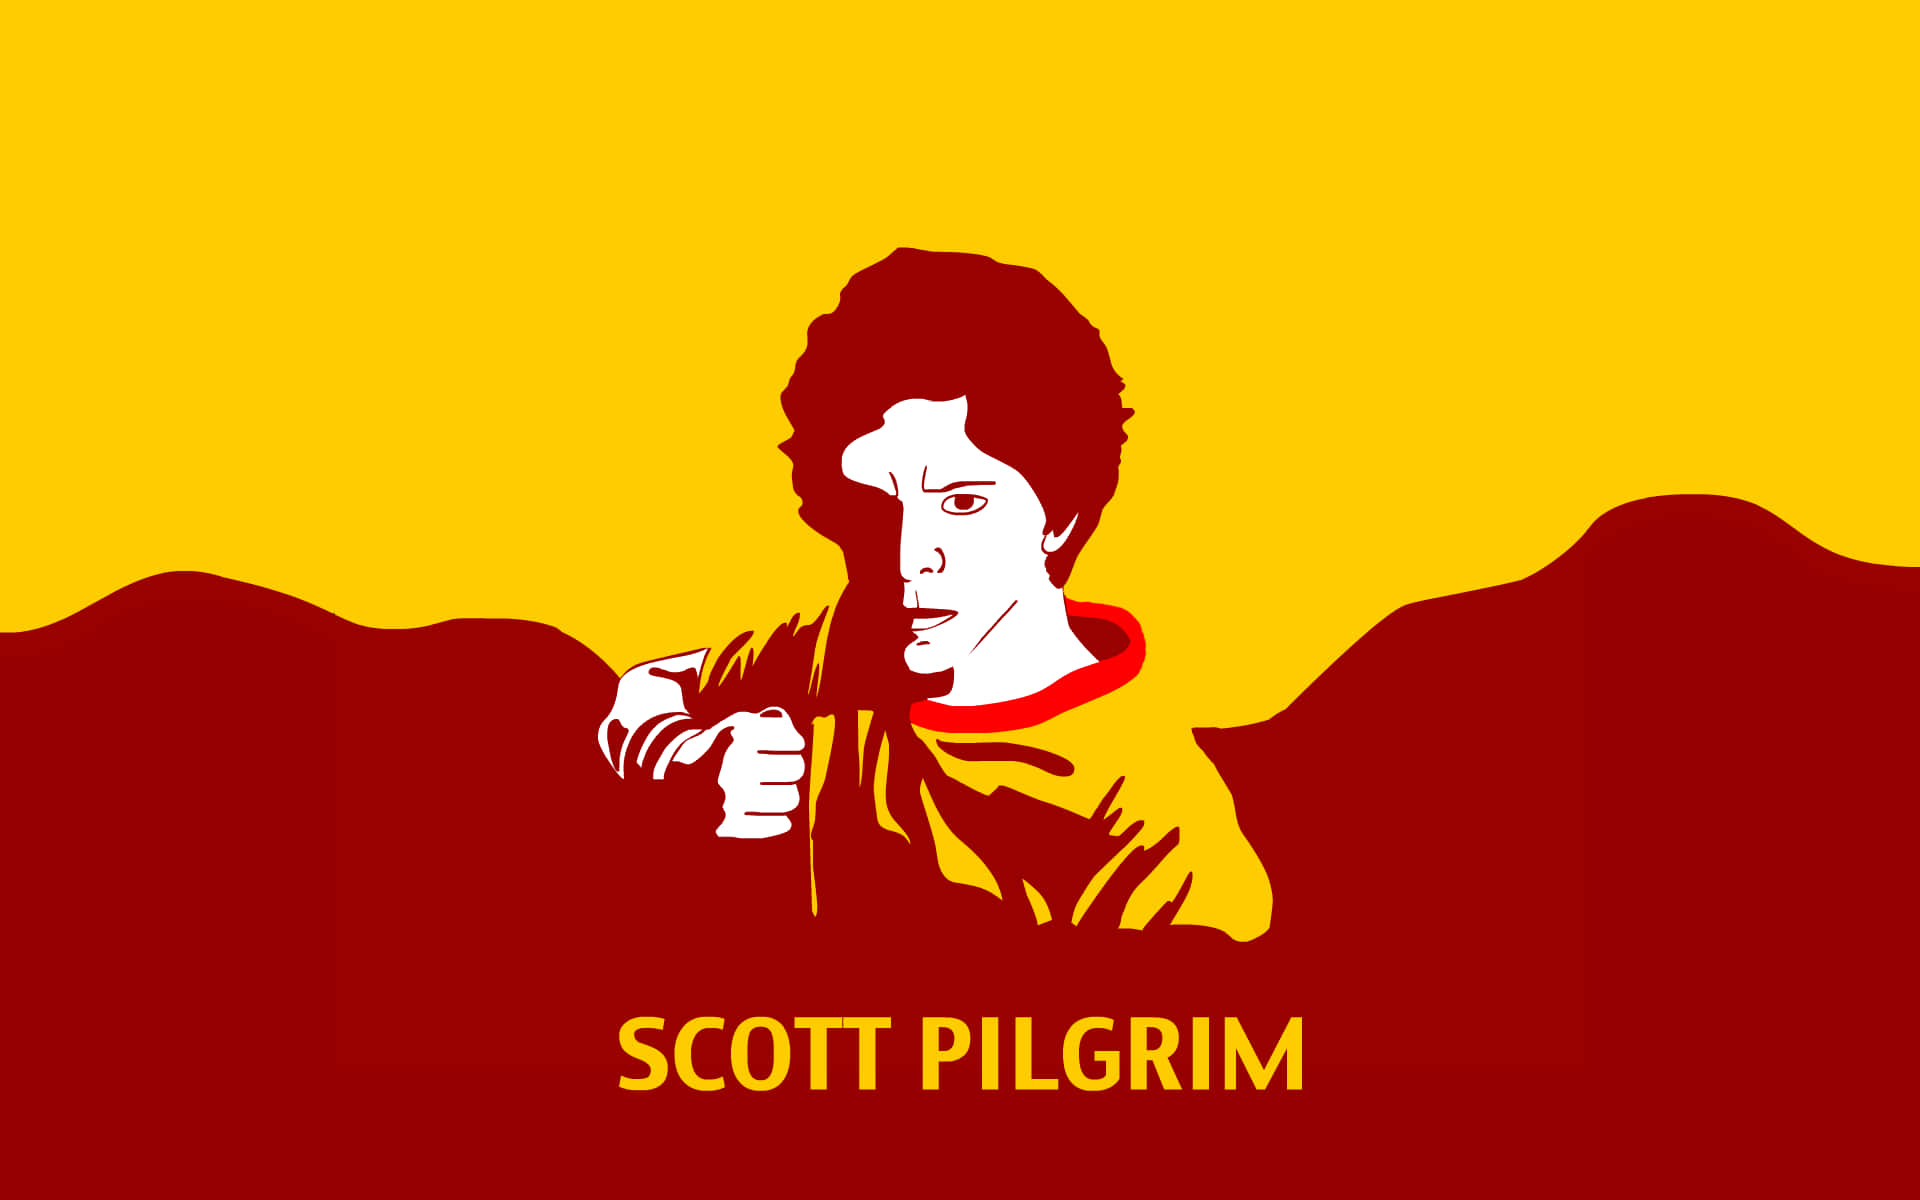 Scottpilgrim-ansiktet Ser Ut Wallpaper